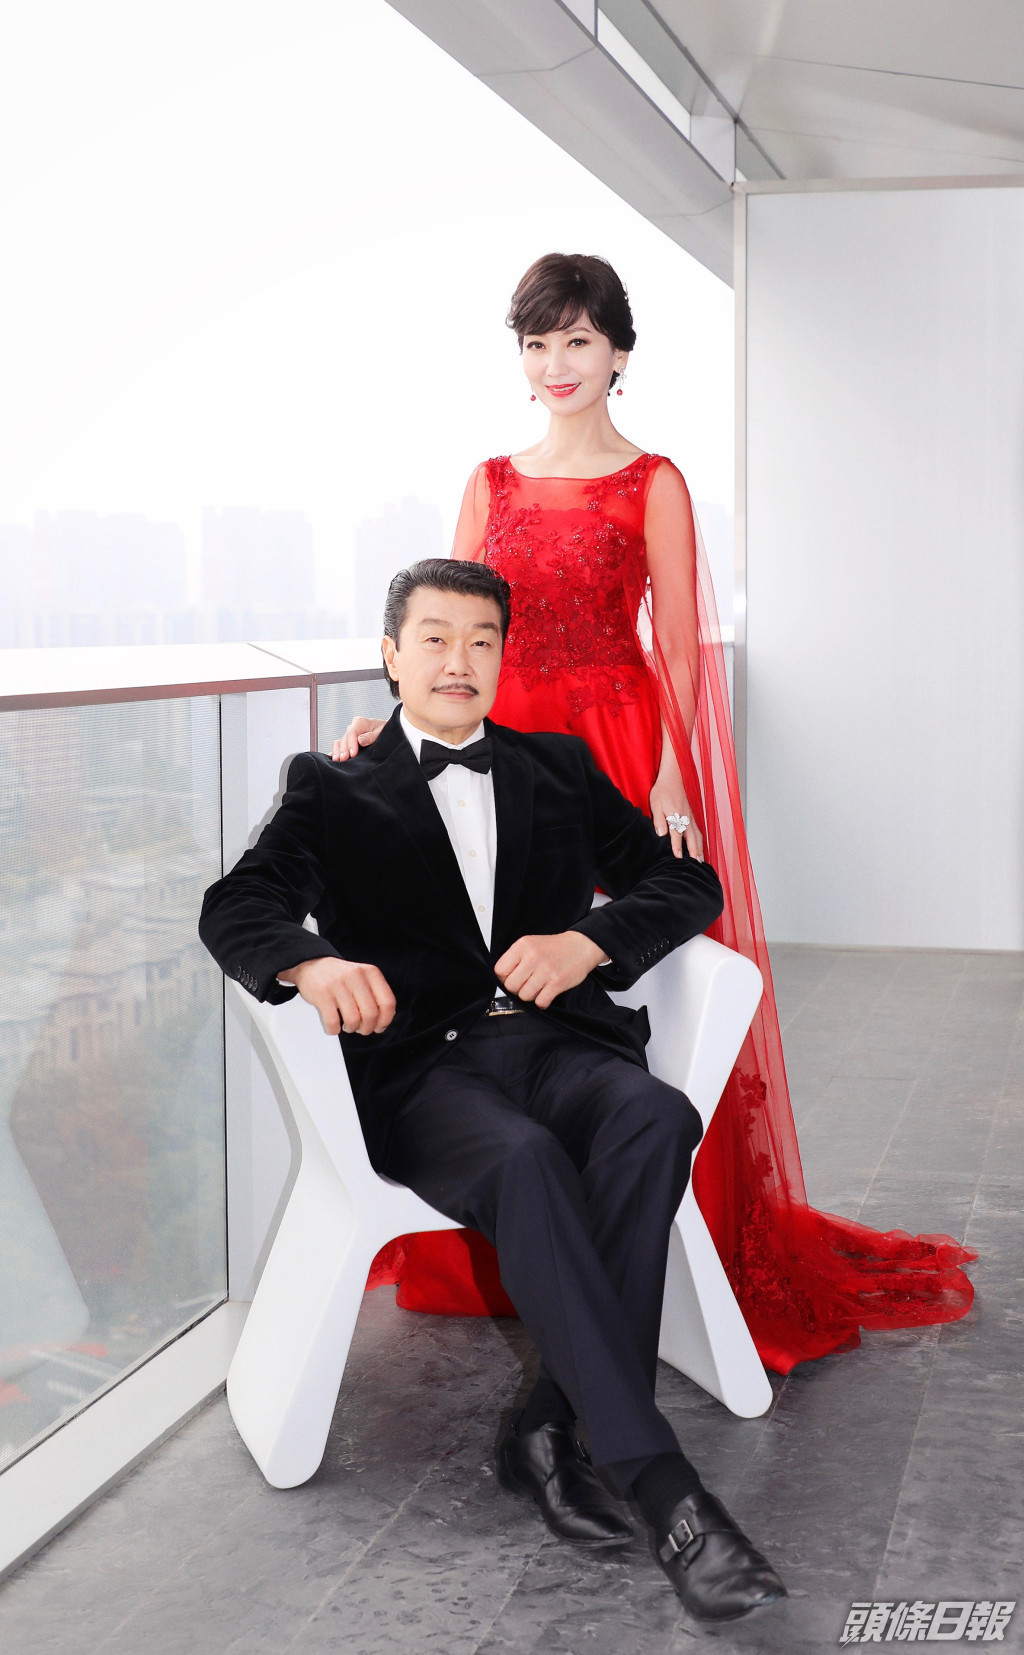 黃錦燊與趙雅芝在1984年結婚。